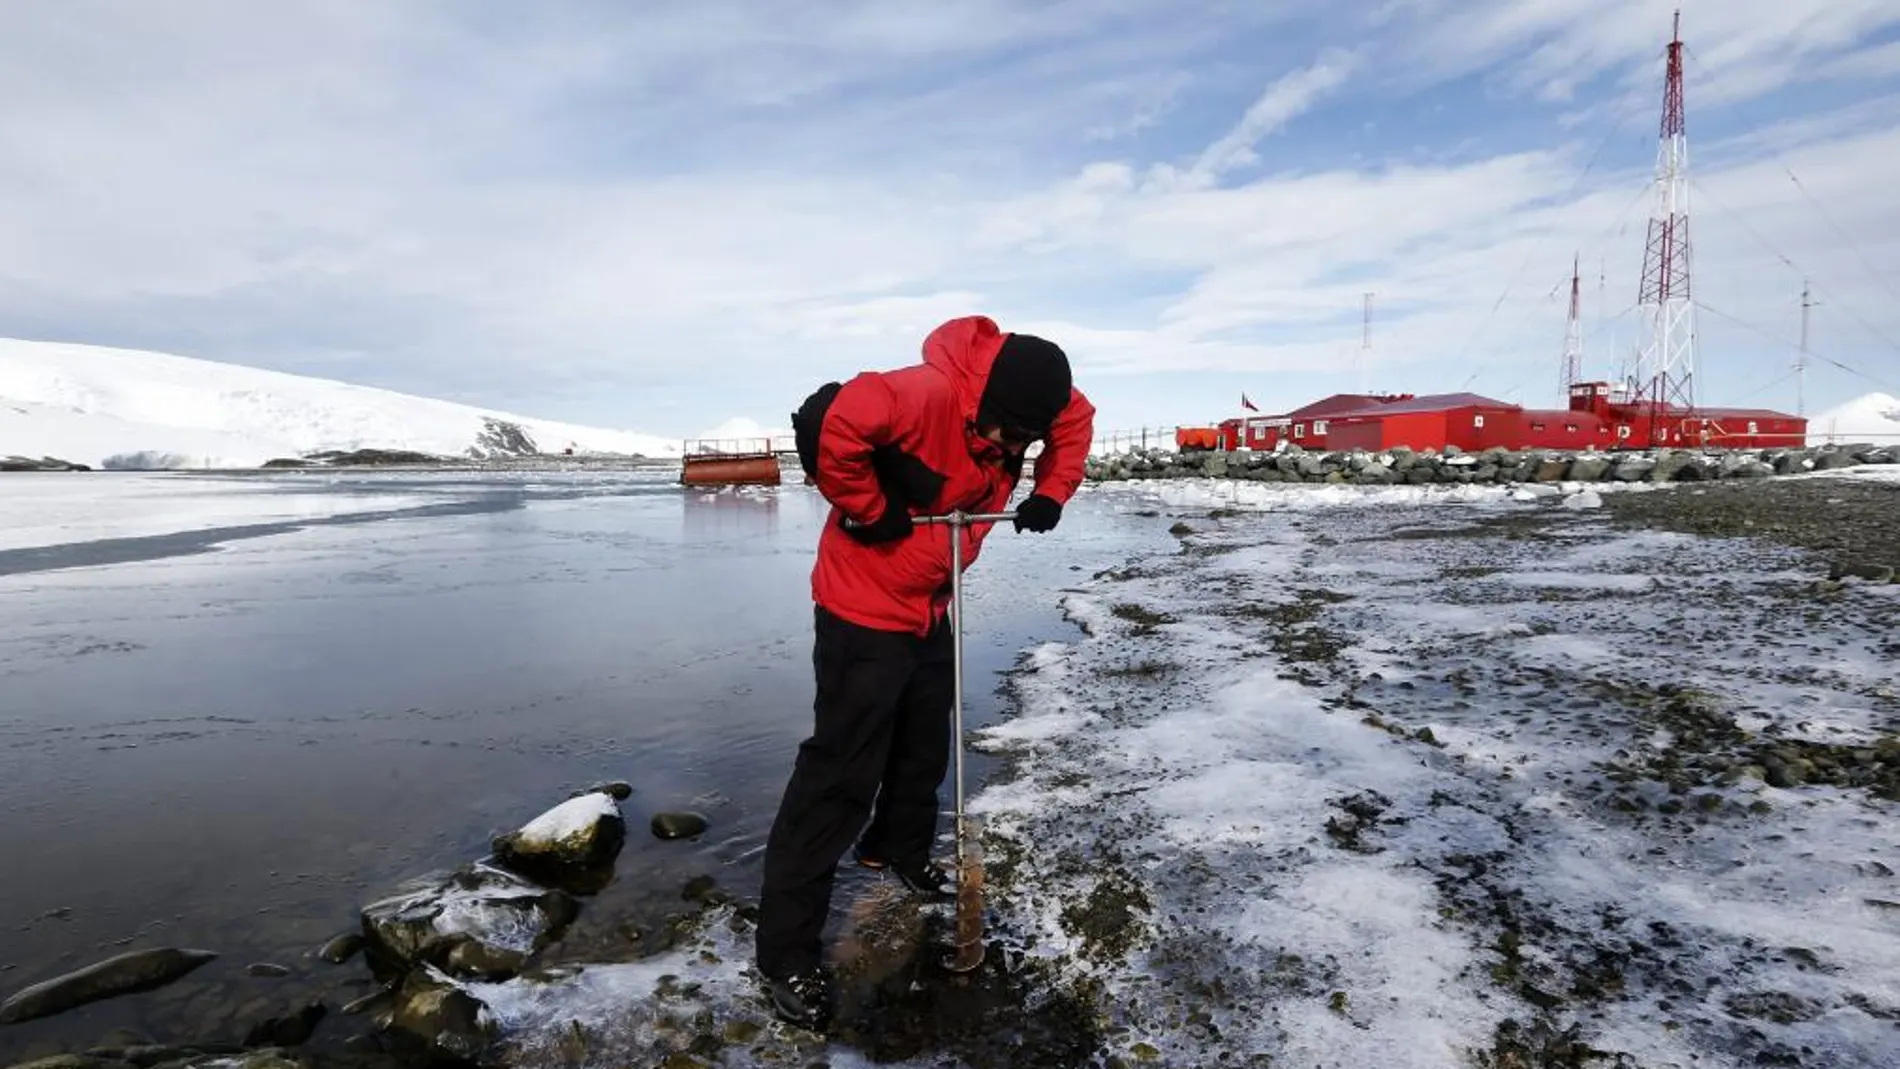 Imagen fechada el 20 de febrero de 2013 que muestra a un científico sacando muestras de tierra junto a la base naval antártica Arturo Prat, en la Isla del Rey Jorge, en las Islas Shetland del Sur, Antártica.